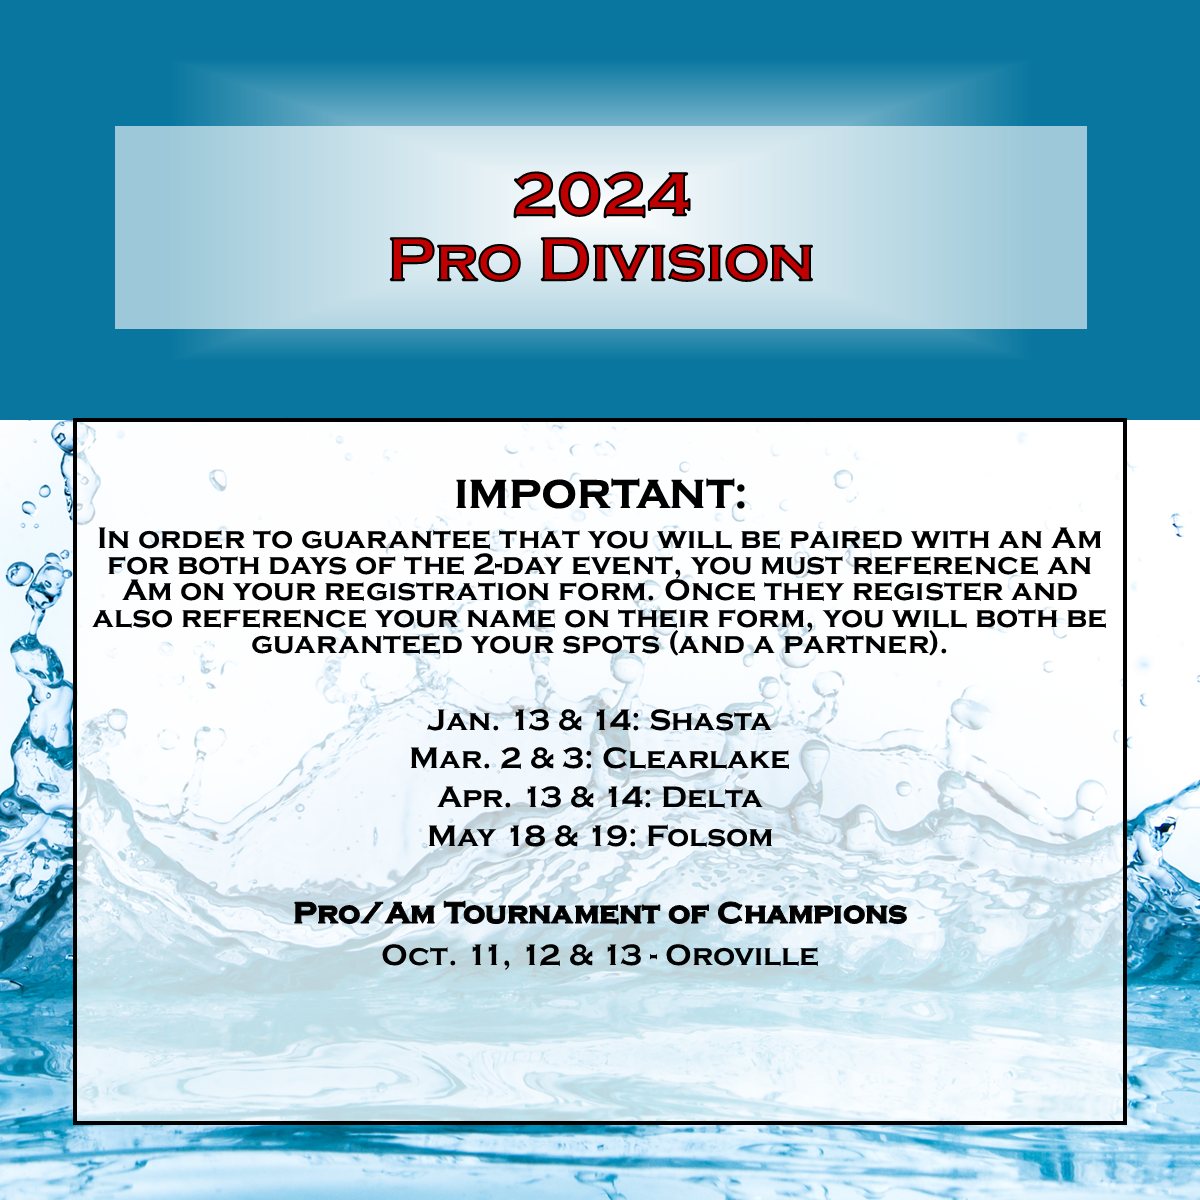 Pro Division Entry: Shasta - January 13 & 14, 2024